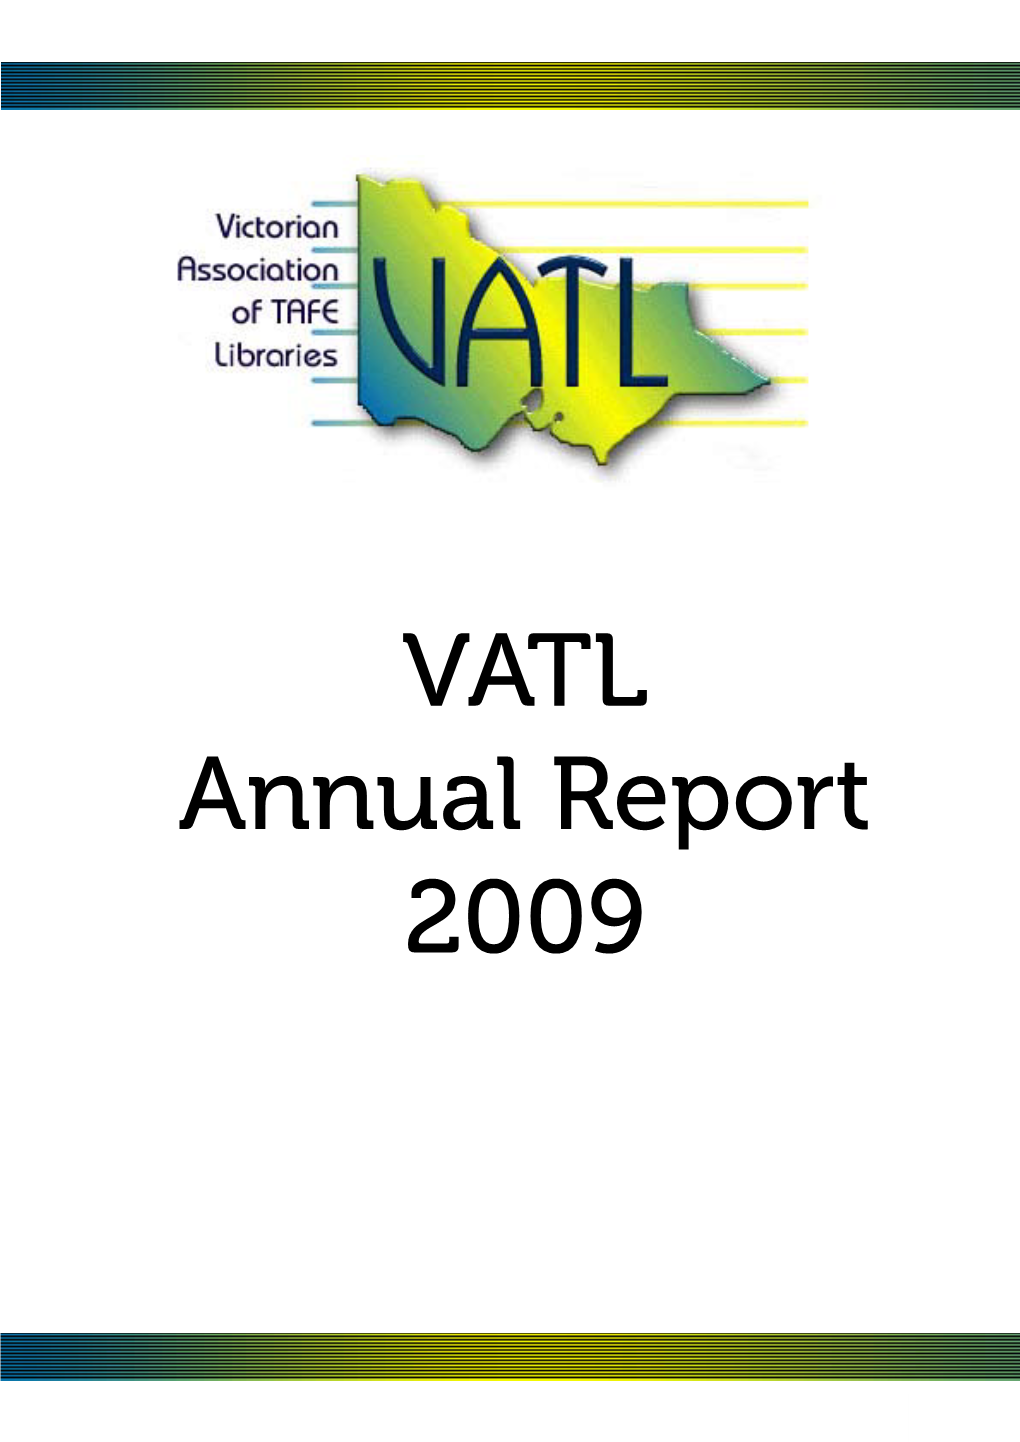 VATL Annual Report 2009